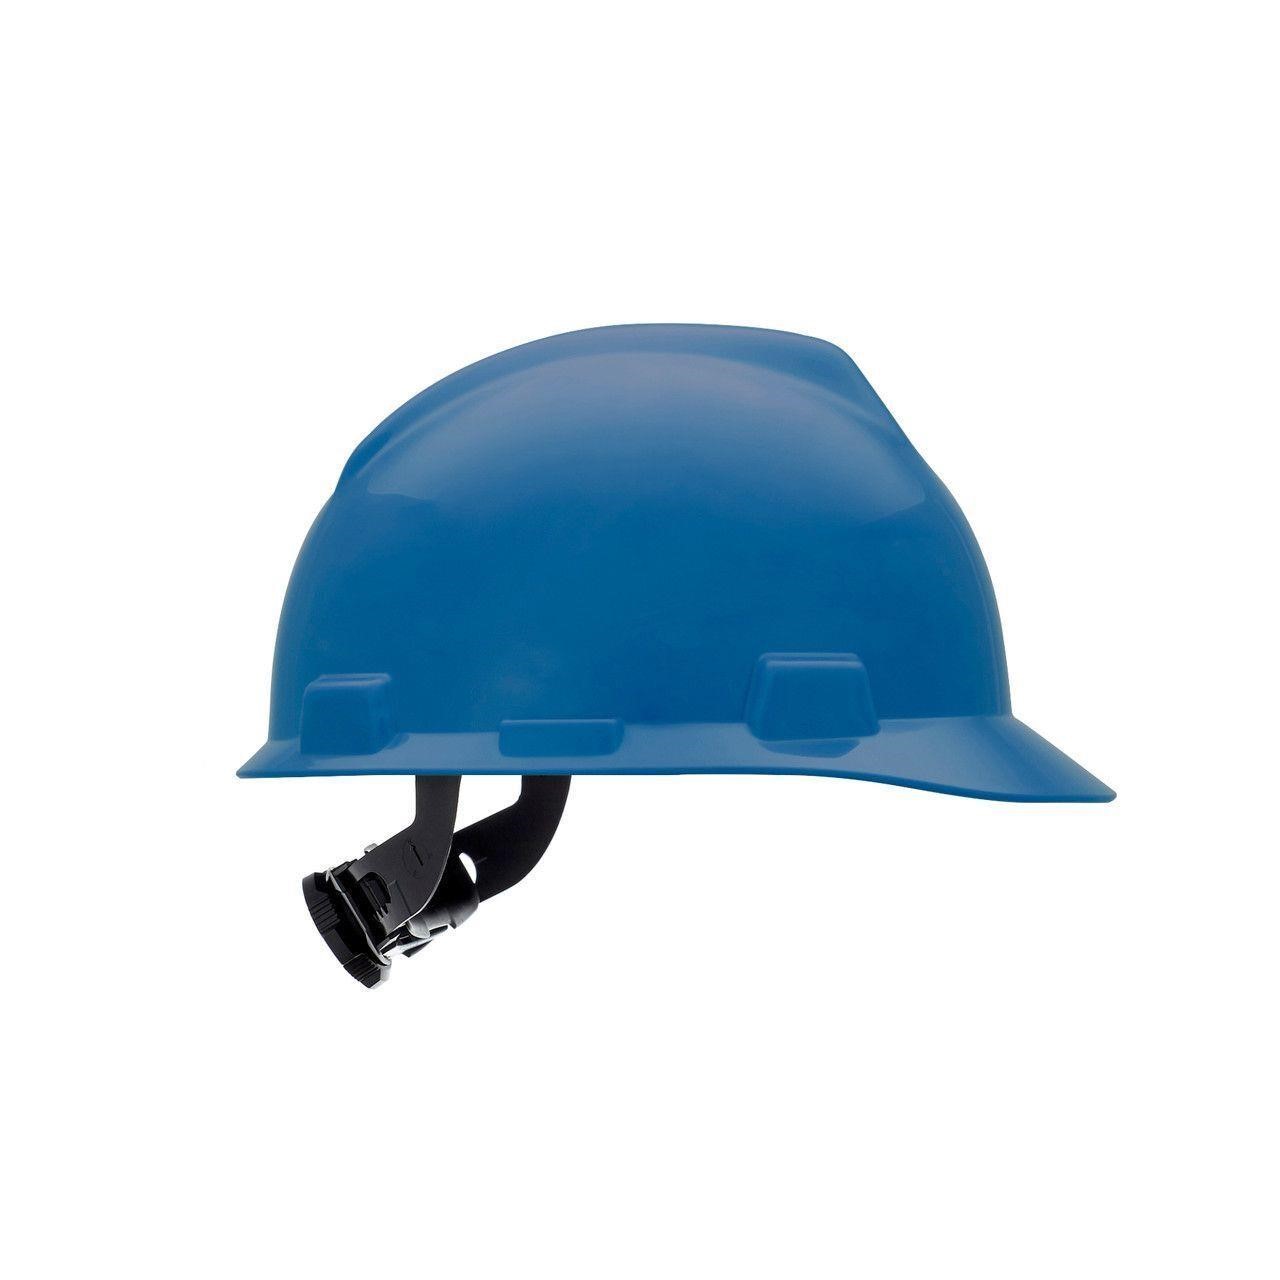 Twelve (12) V-Gard Slotted Cap, Blue Hard Hats